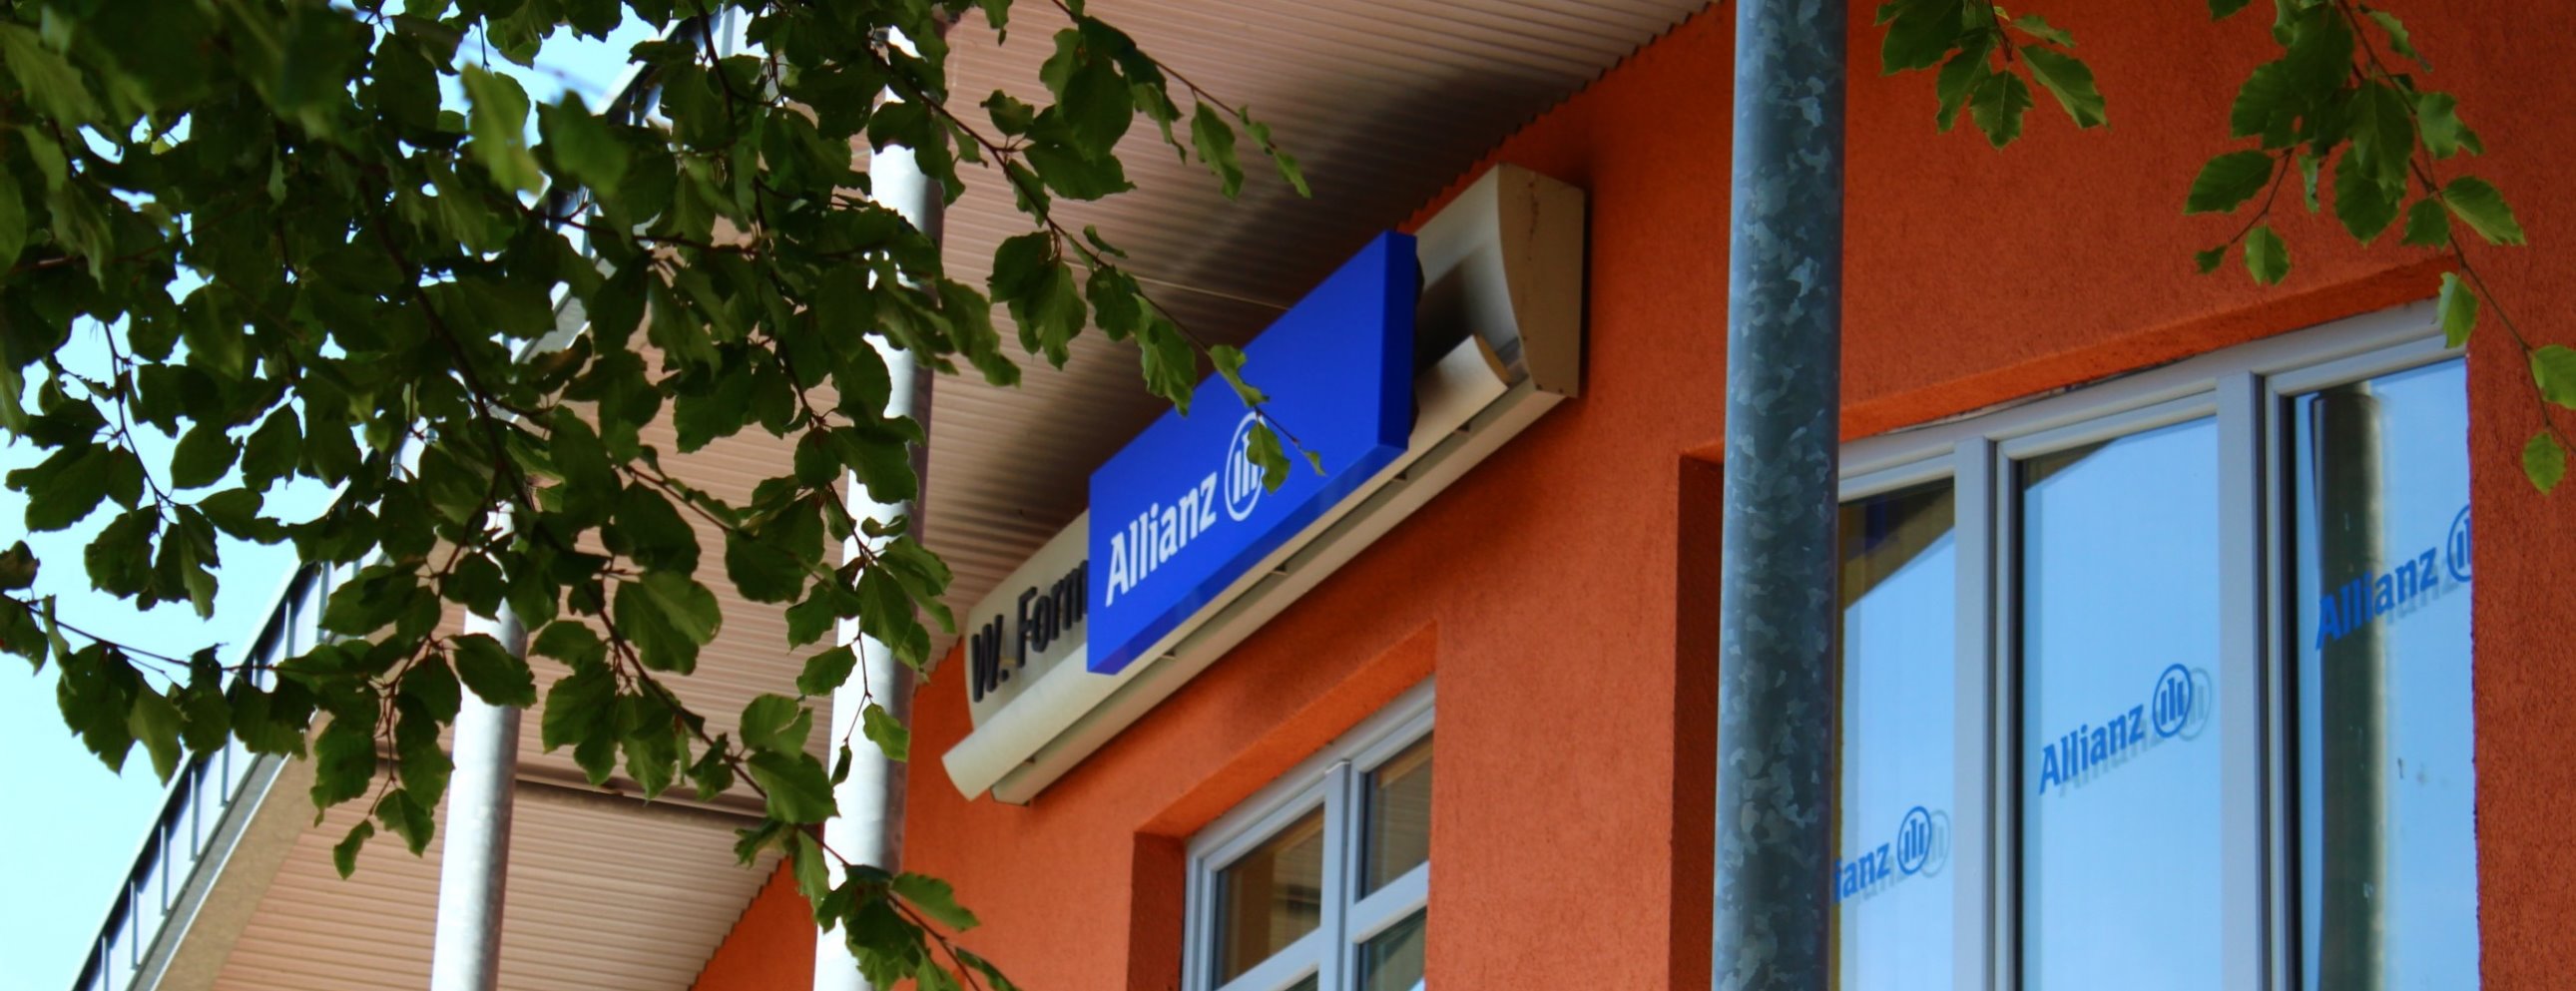 Allianz Versicherung Wolfgang Formen e.K. Monschau - Geschäftsgebäude der Allianz GV Formen in Monschau